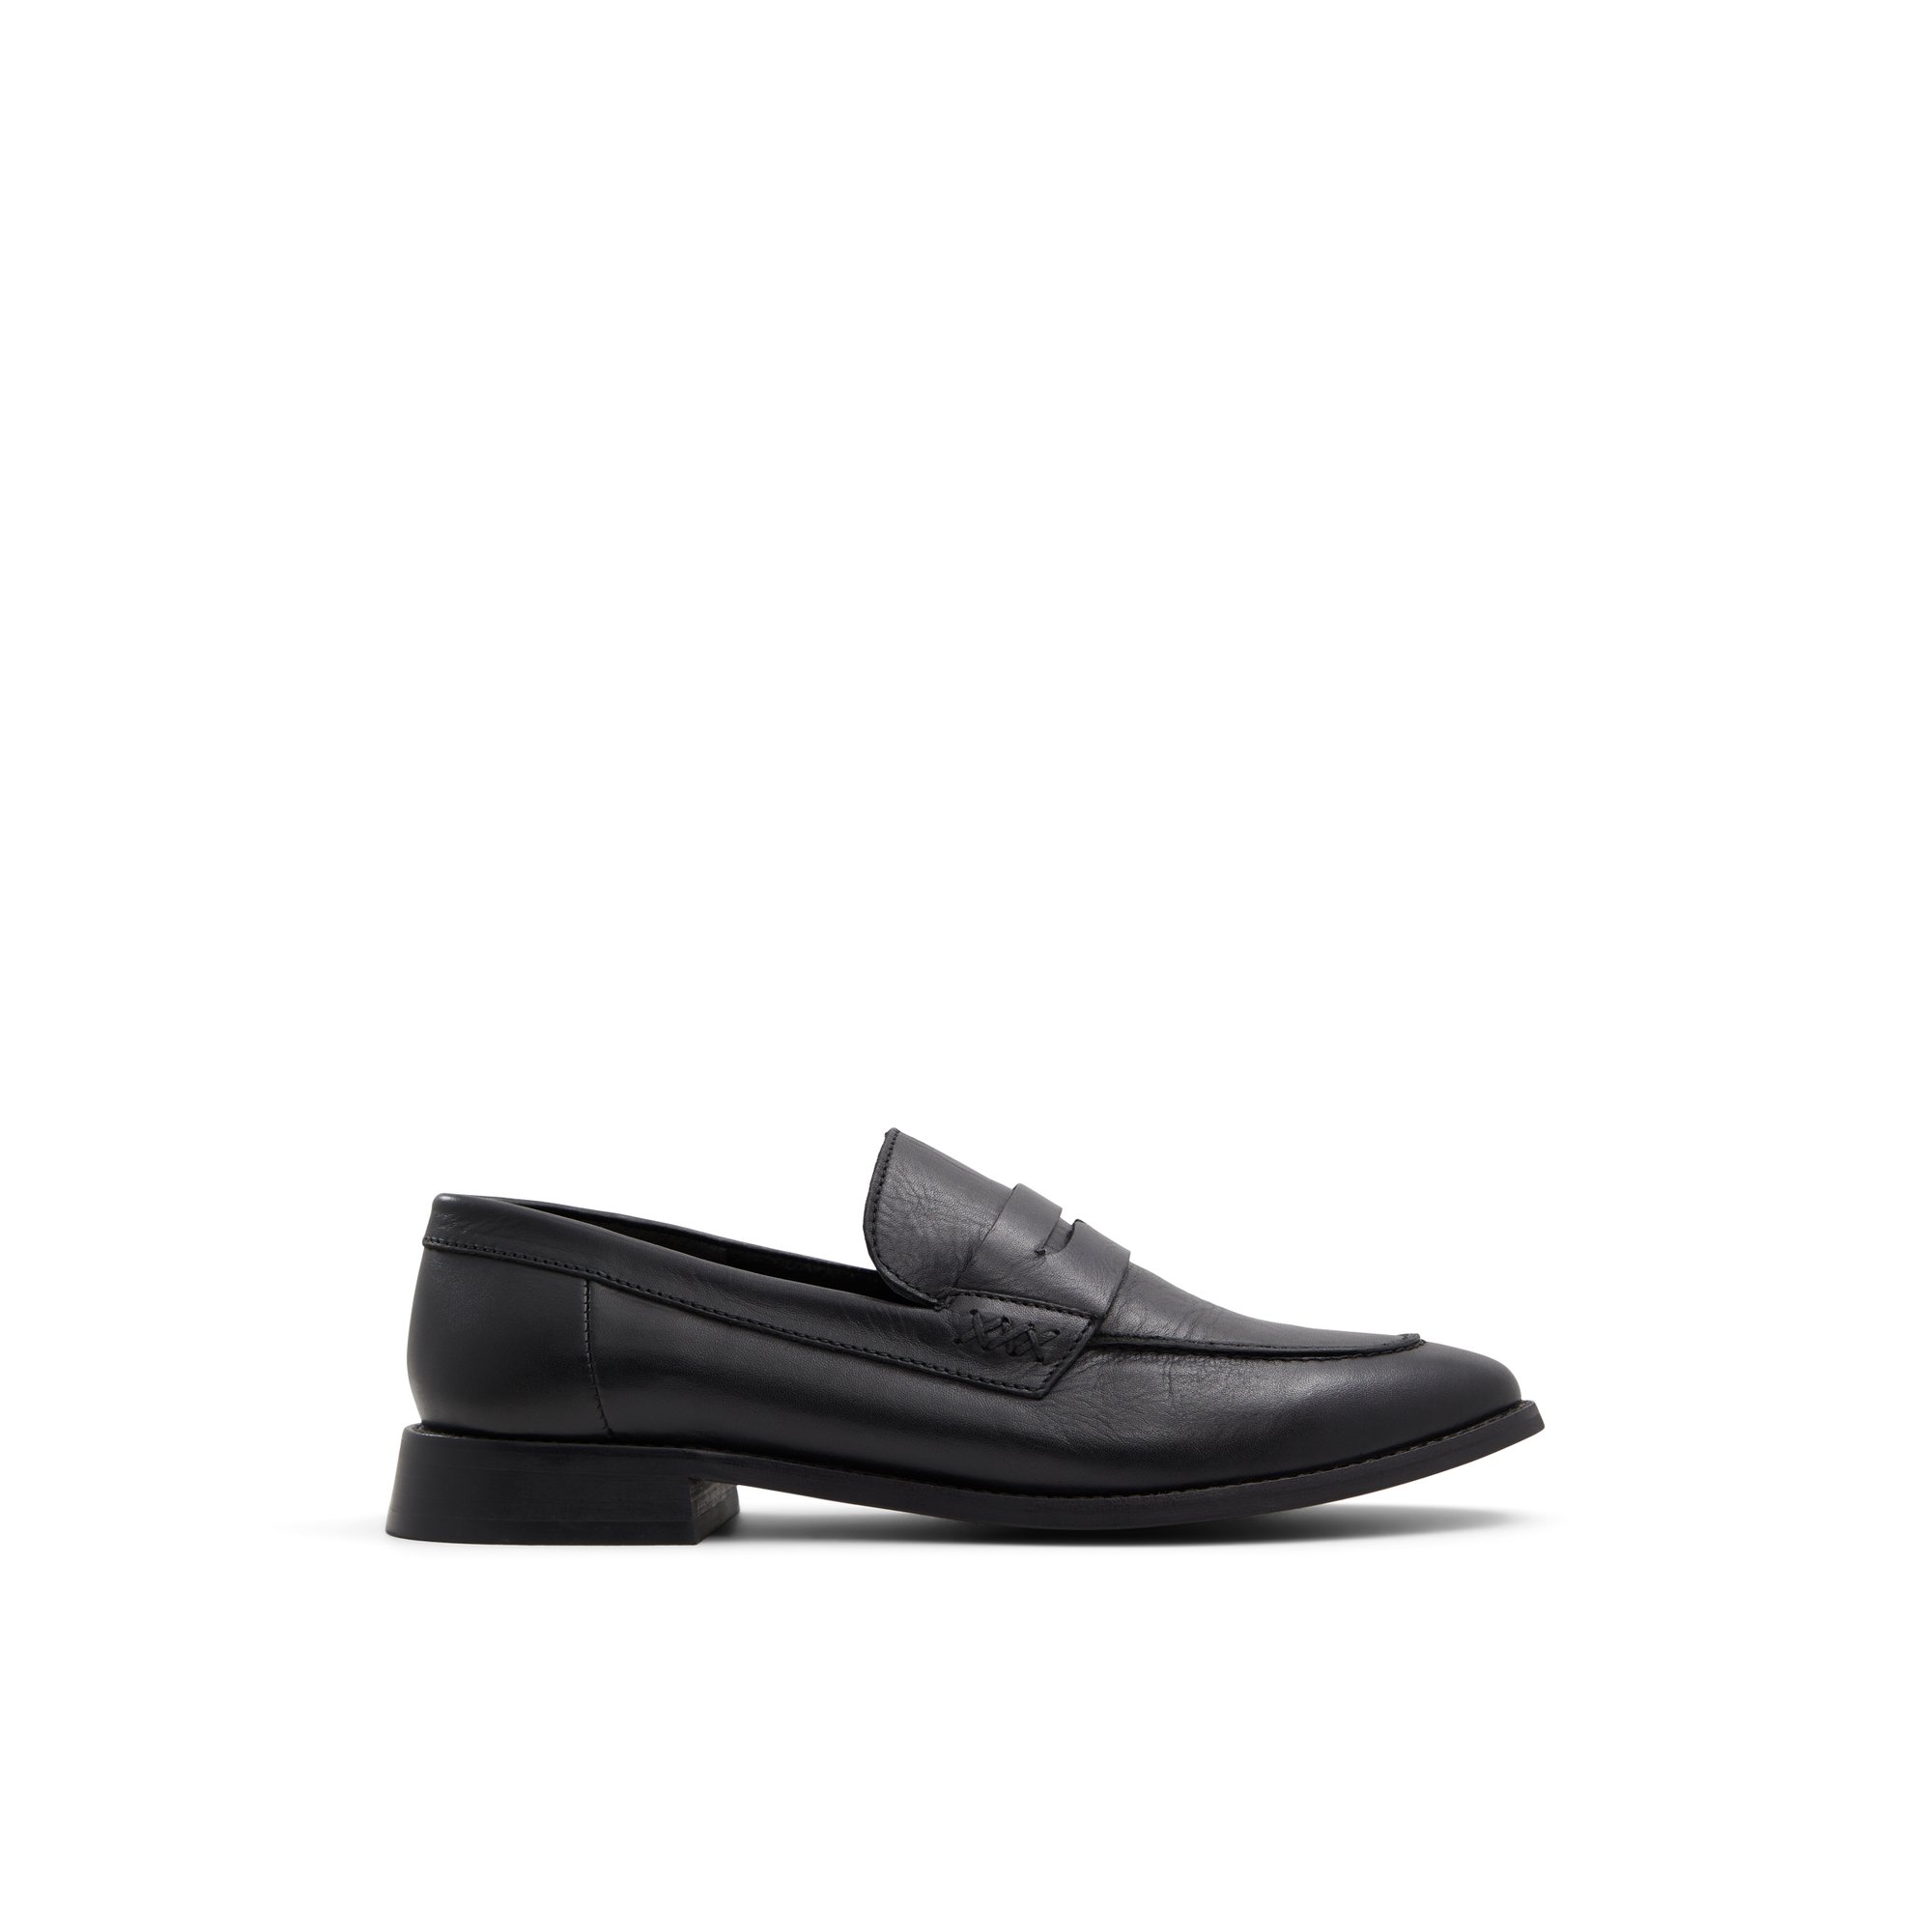 ALDO Focal - Women's Loafers - Black